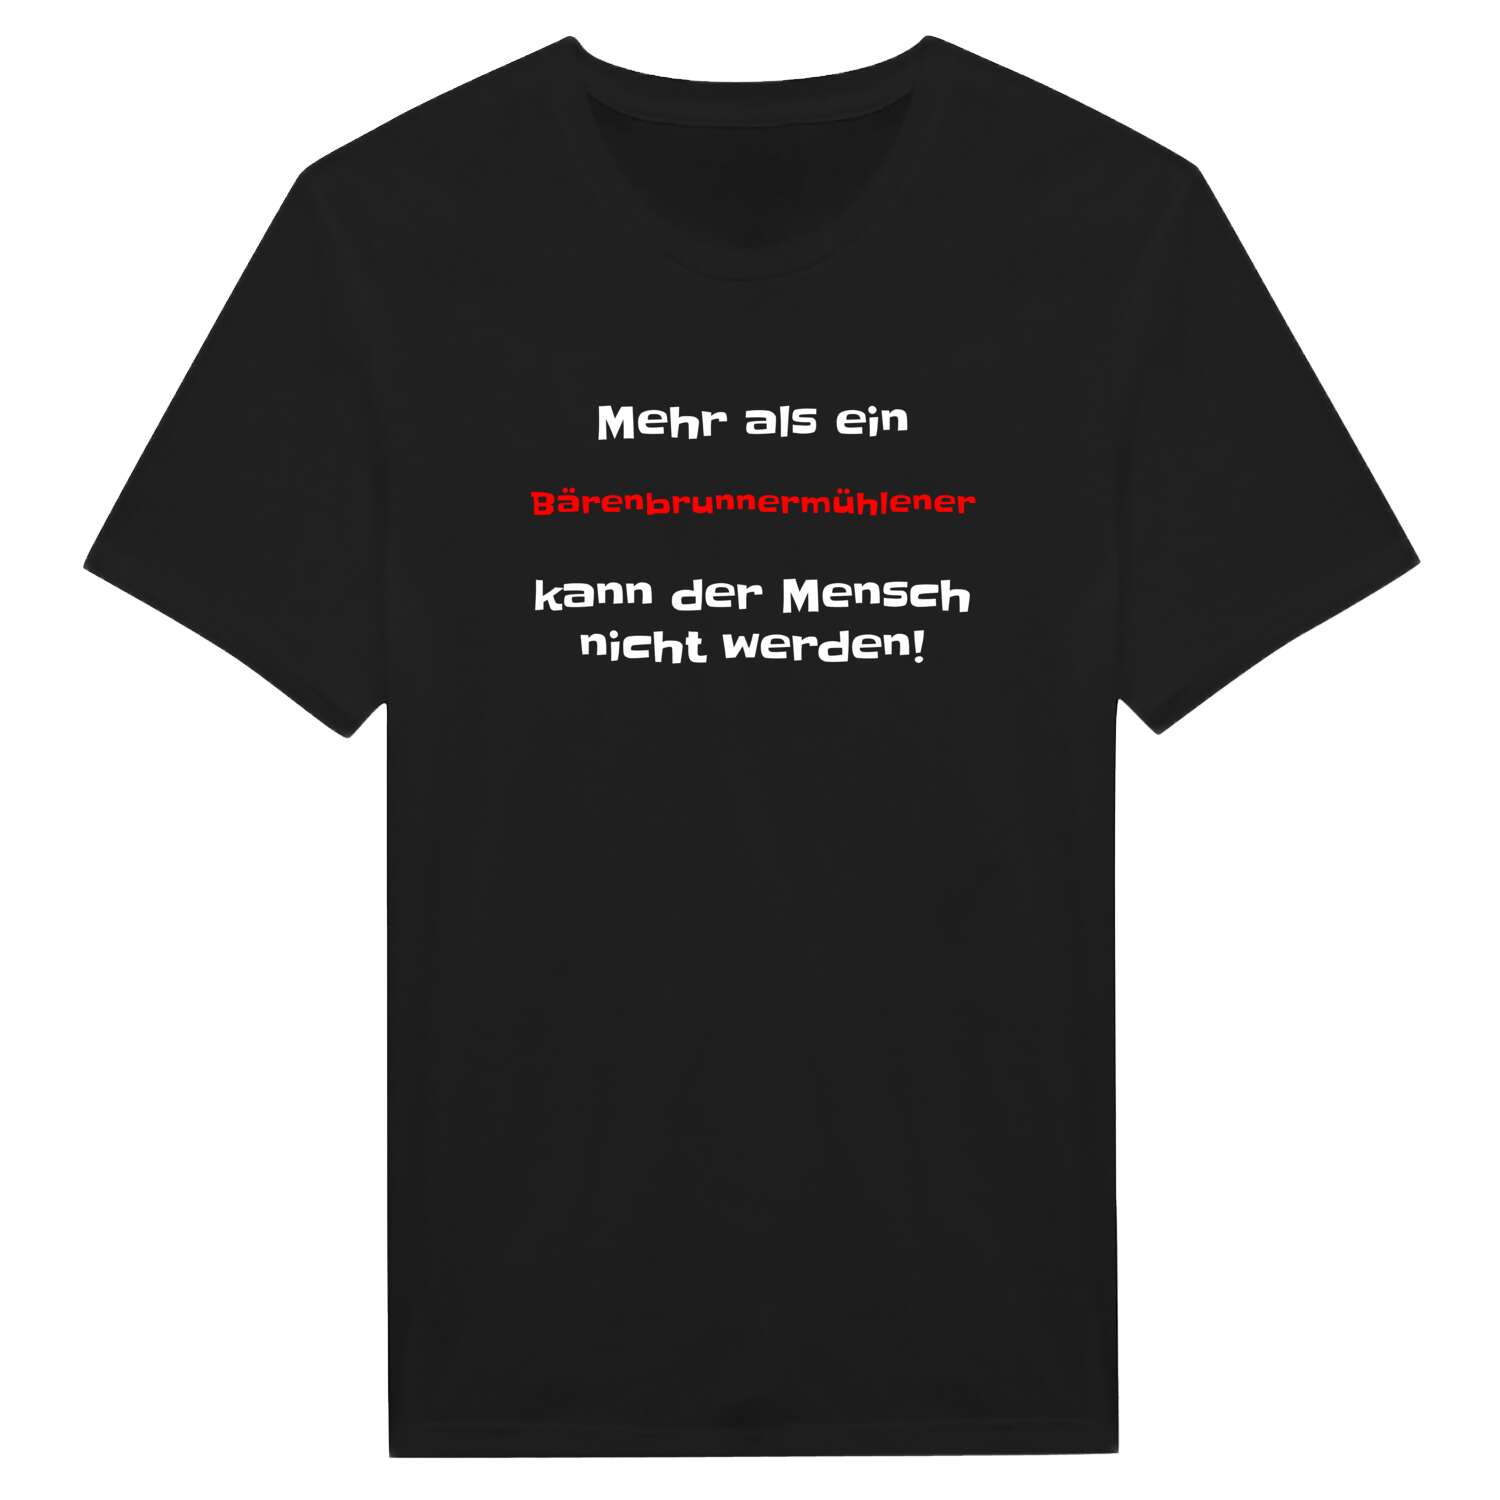 Bärenbrunnermühle T-Shirt »Mehr als ein«